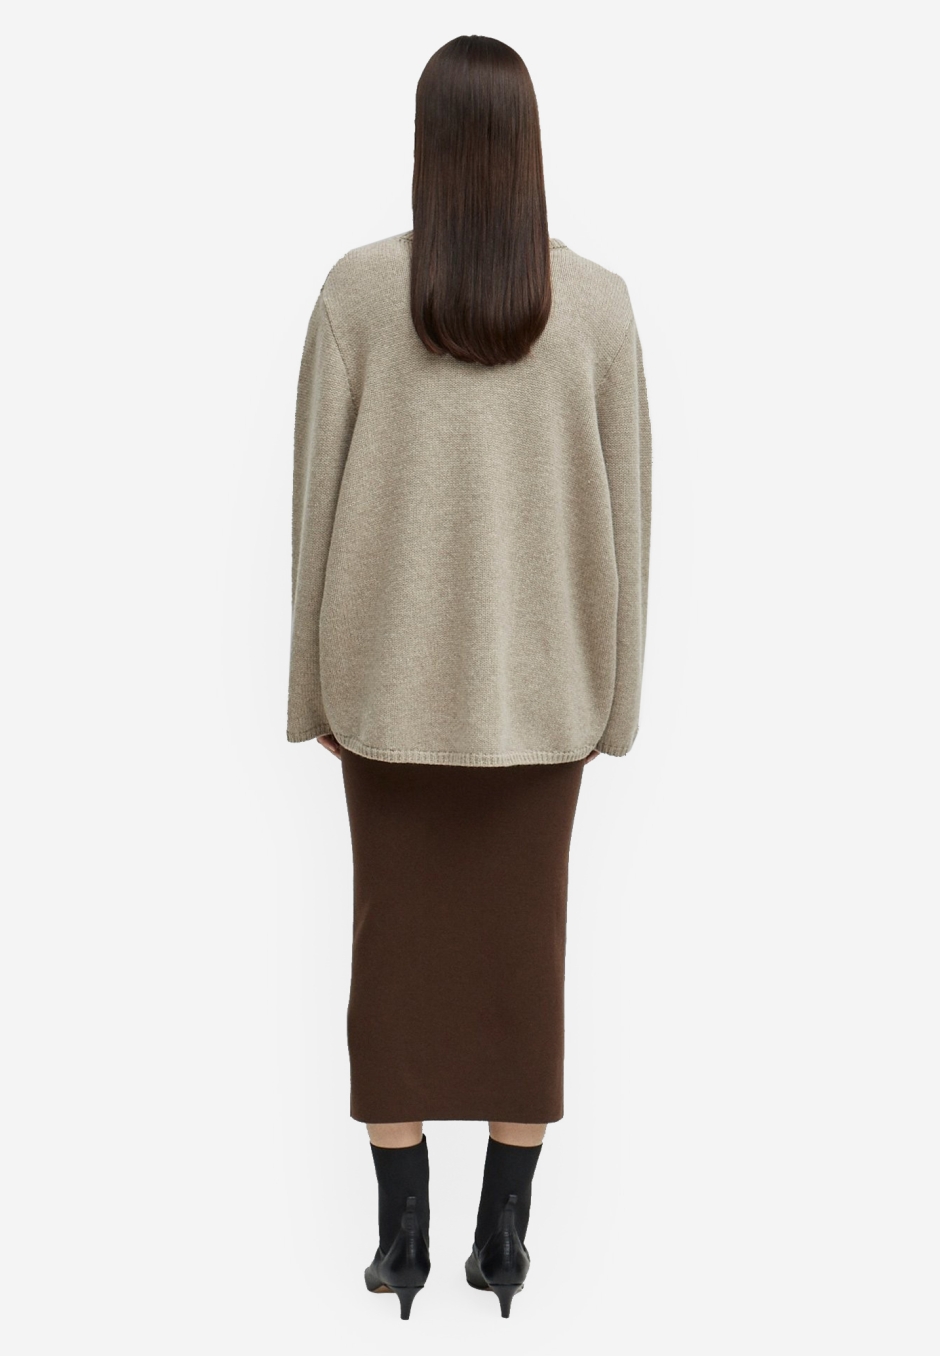 Totême Murano Skirt